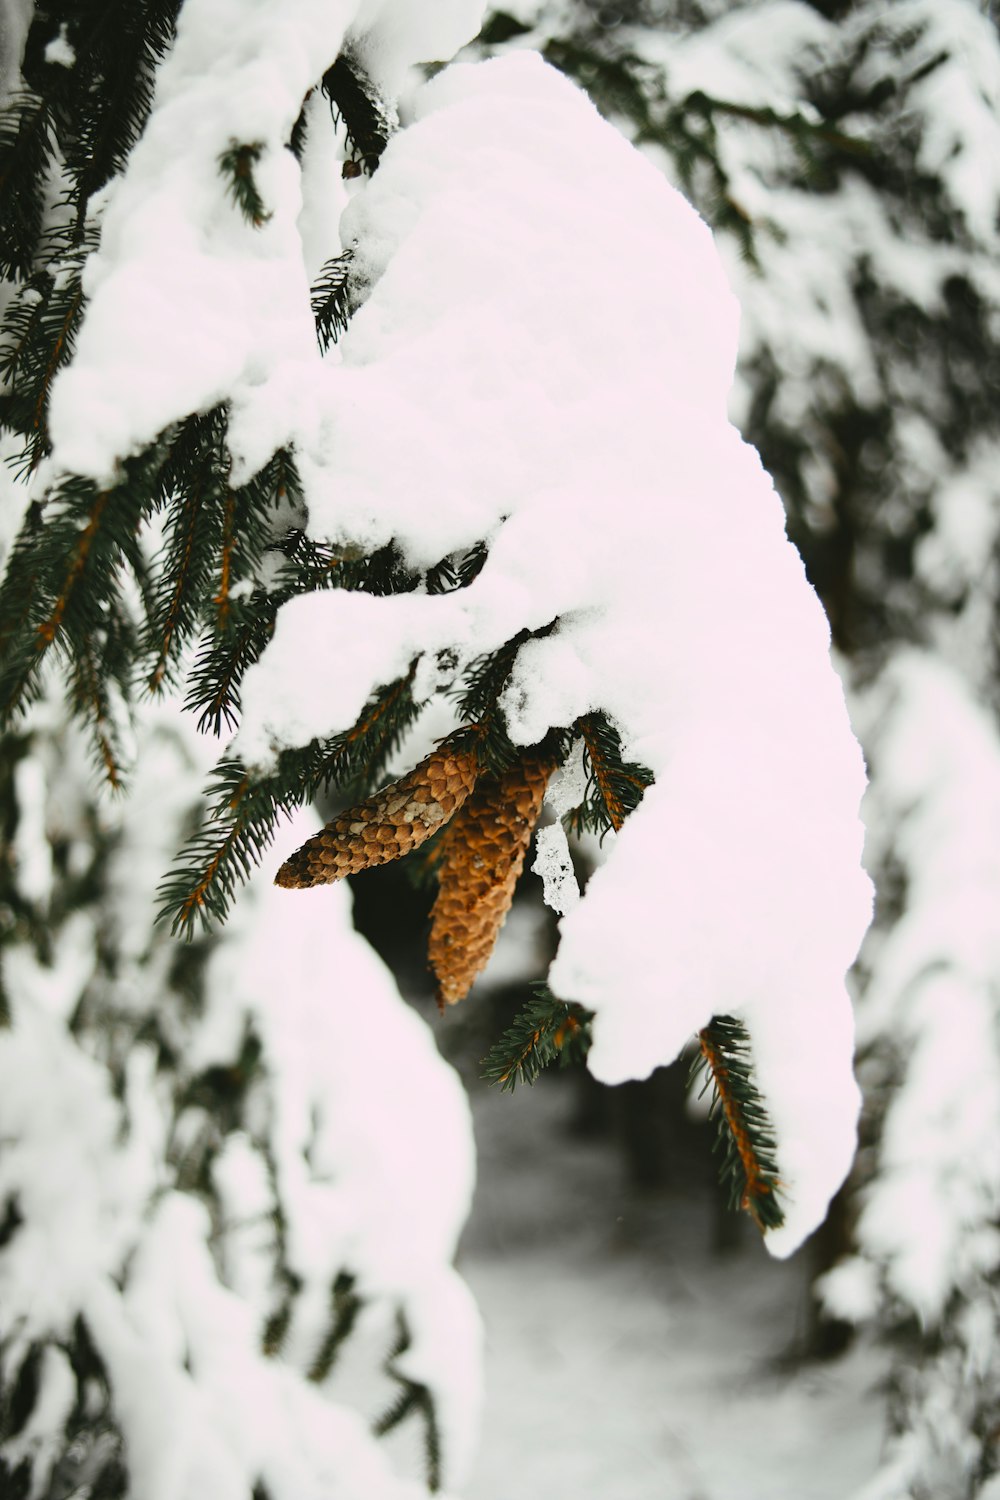 pássaro marrom e preto voando sobre árvore coberta de neve durante o dia